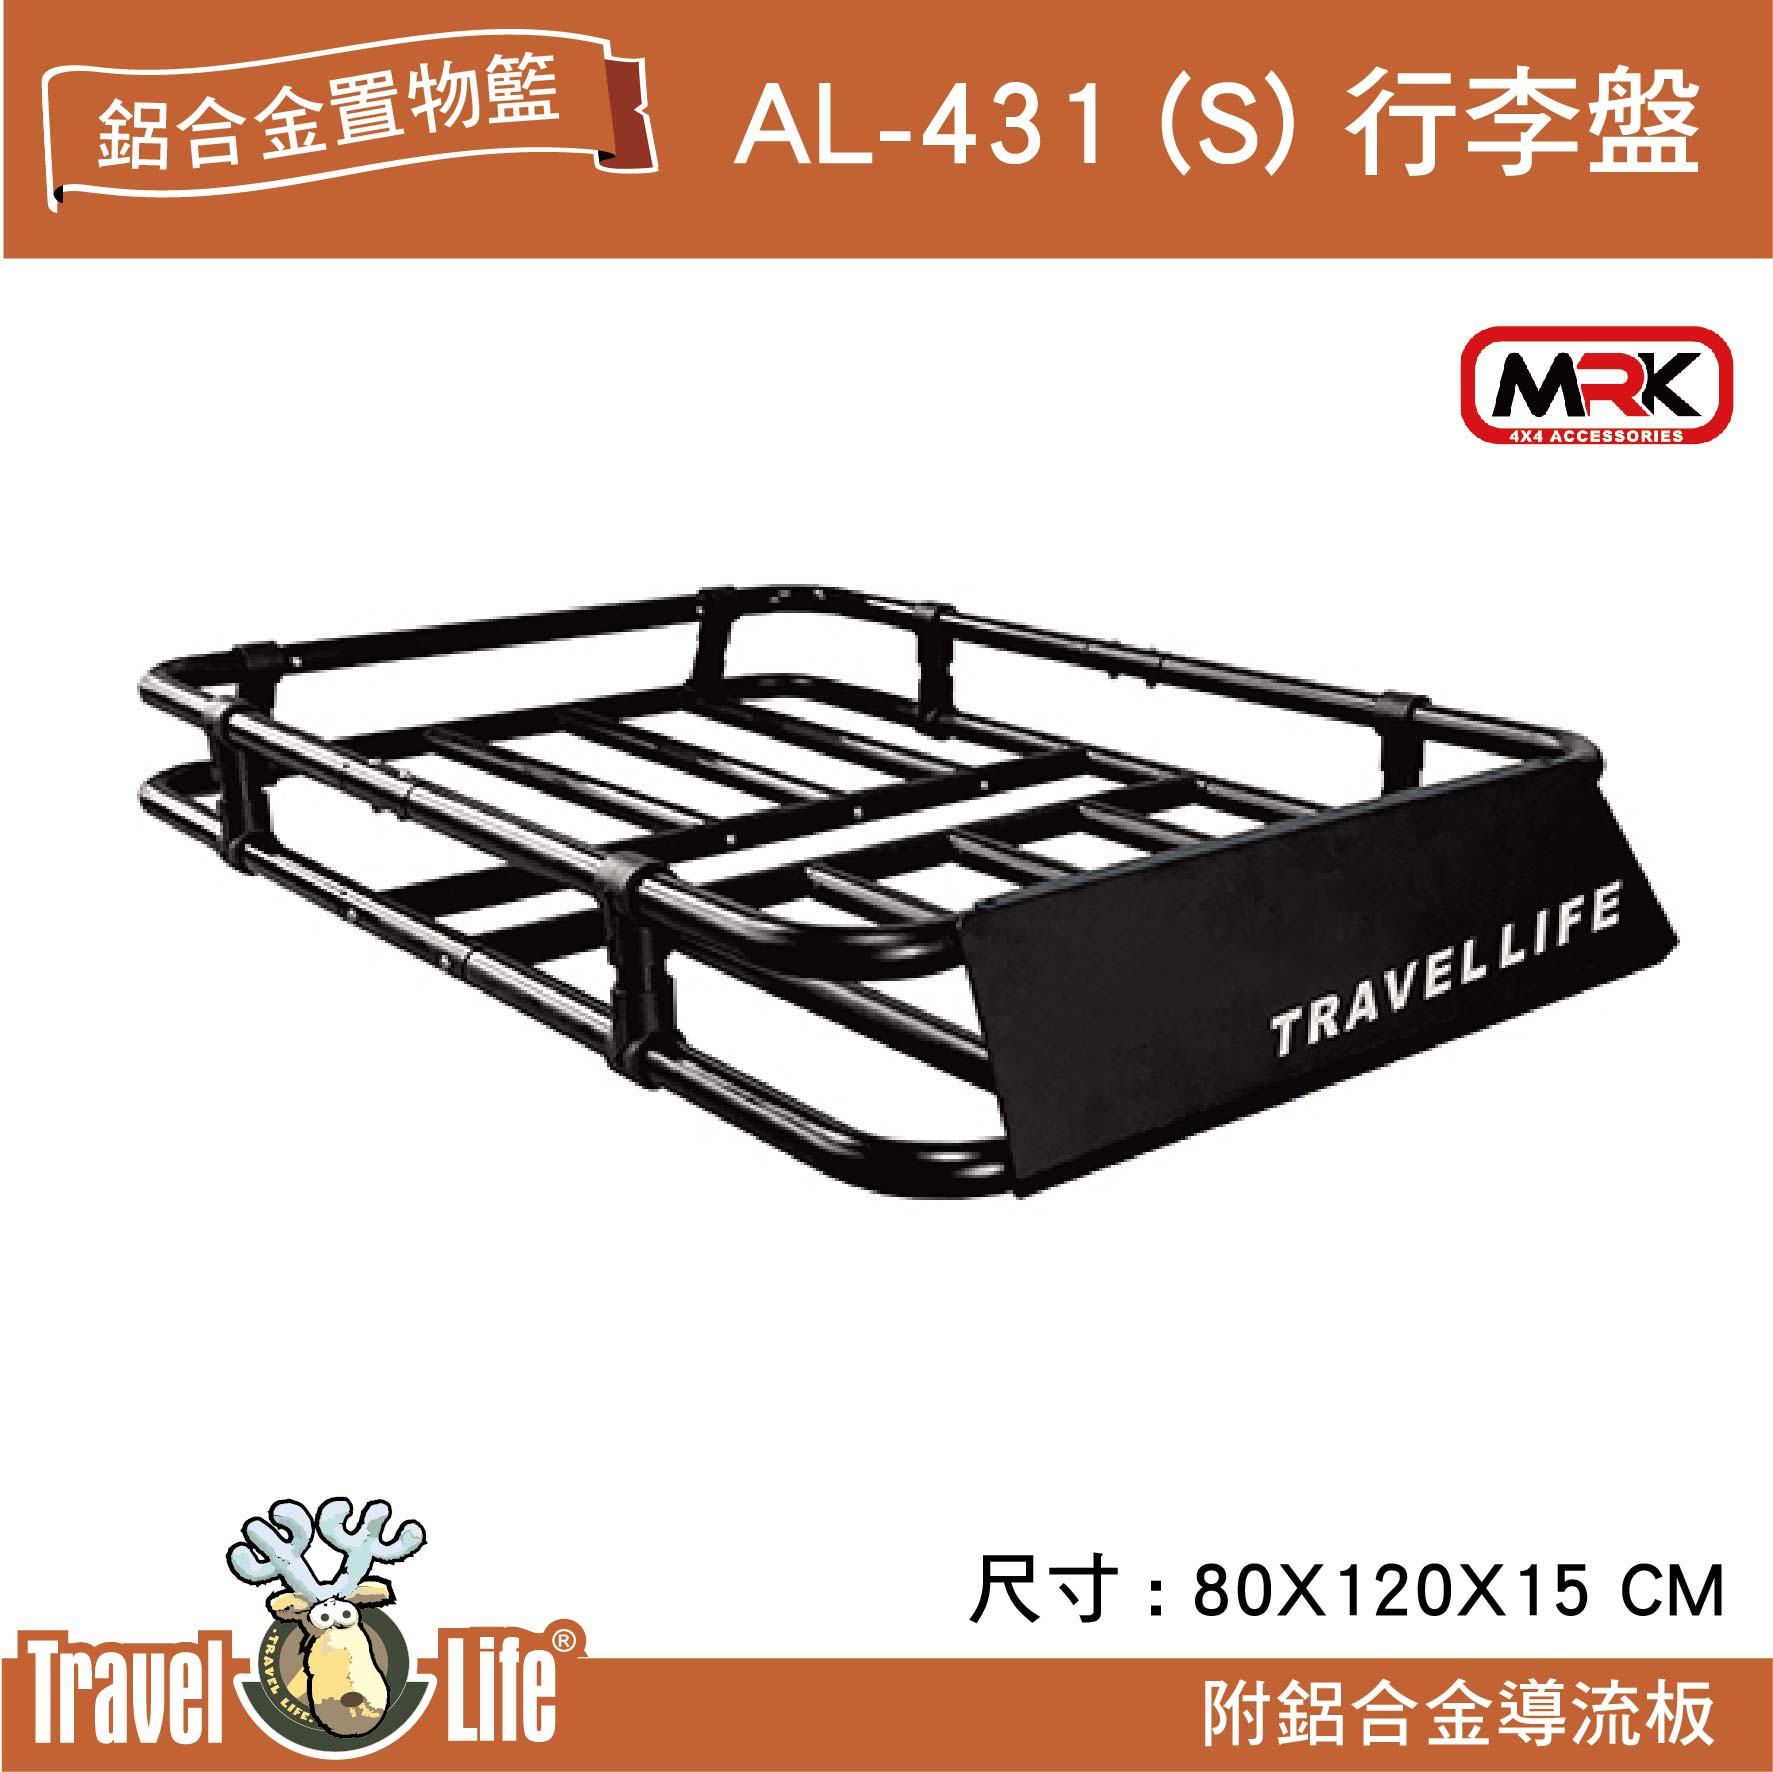 【MRK】Travel Life 快克 AL-431(S) 輕量化鋁合金置物籃 附鋁合金導流板 行李盤 行李架 置物籃